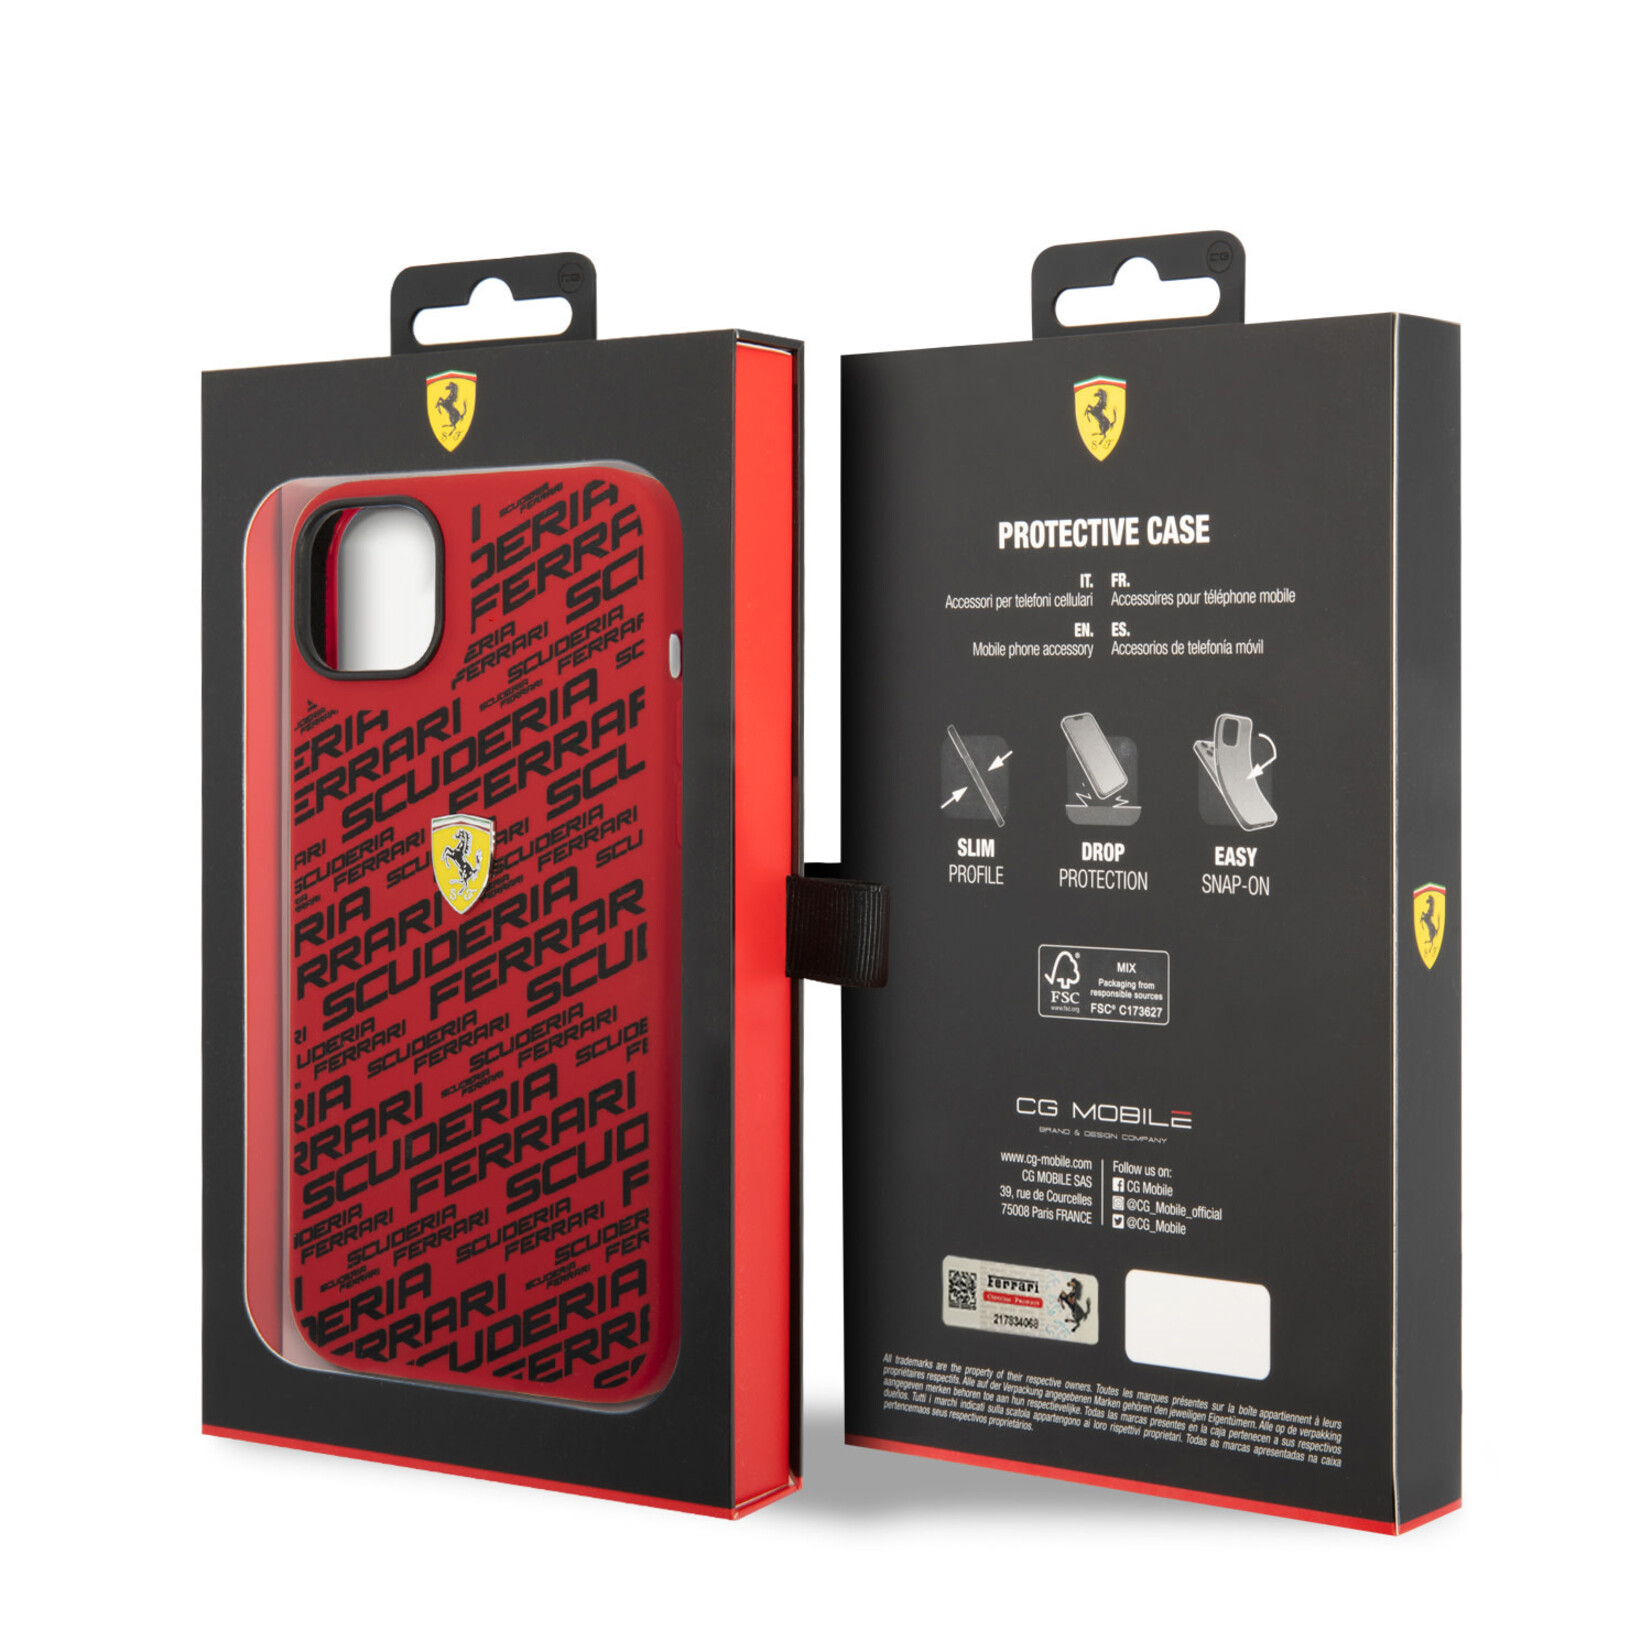 Ferrari Ferrari iPhone 14 Plus Silicone Back Cover Hoesje - Rood - Bescherming en Stijl voor uw Smartphone